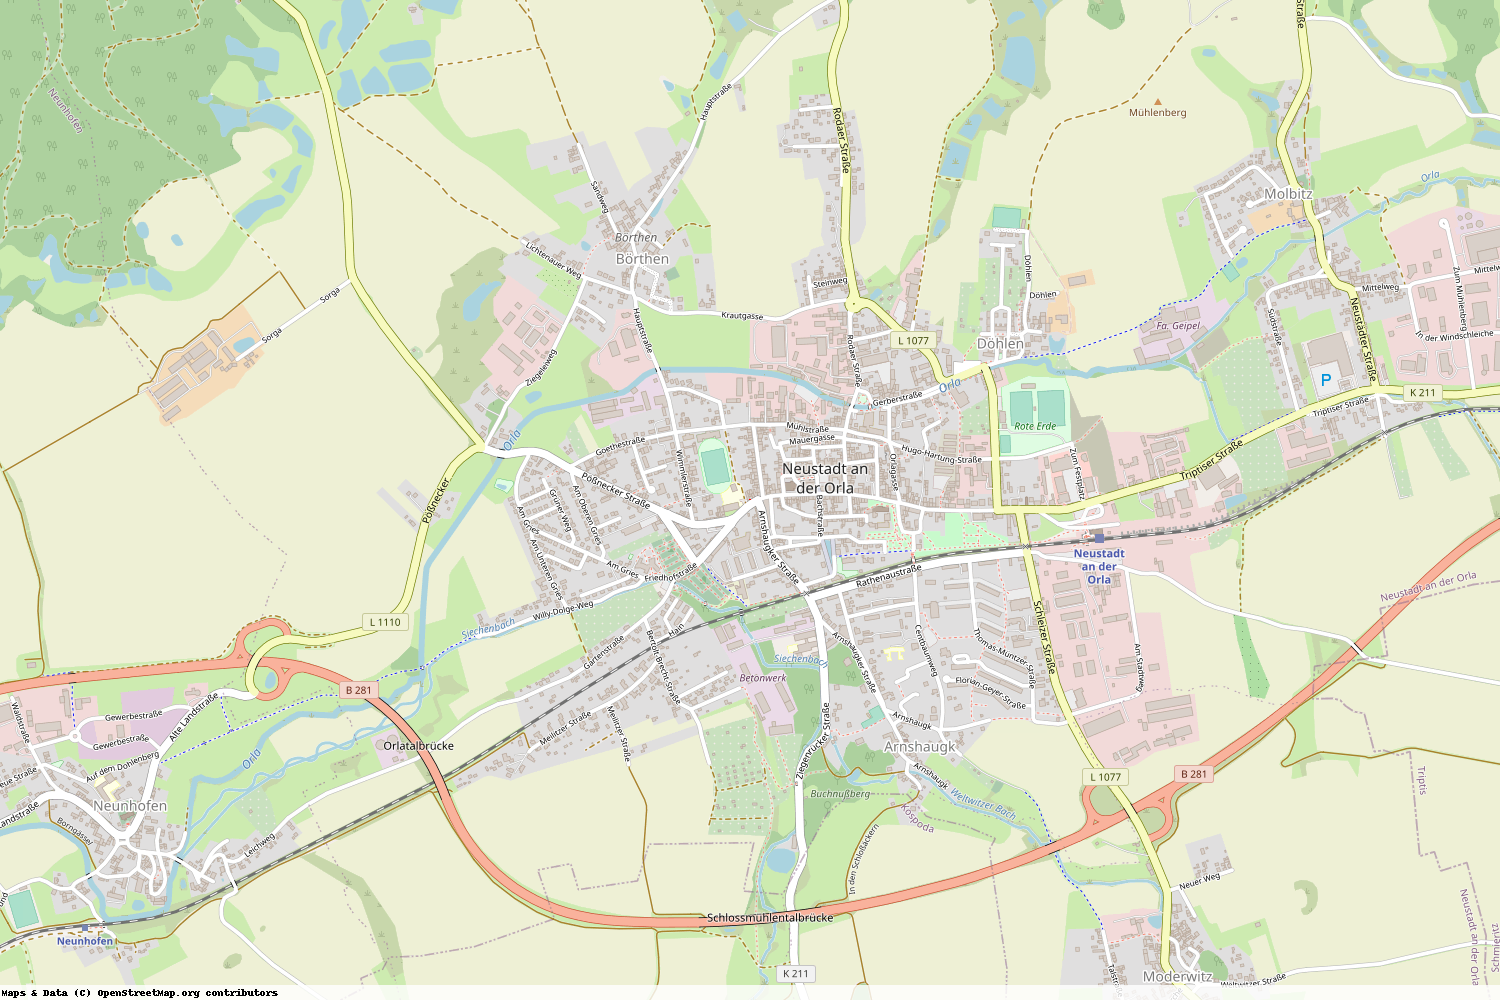 Ist gerade Stromausfall in Thüringen - Saale-Orla-Kreis - Neustadt an der Orla?